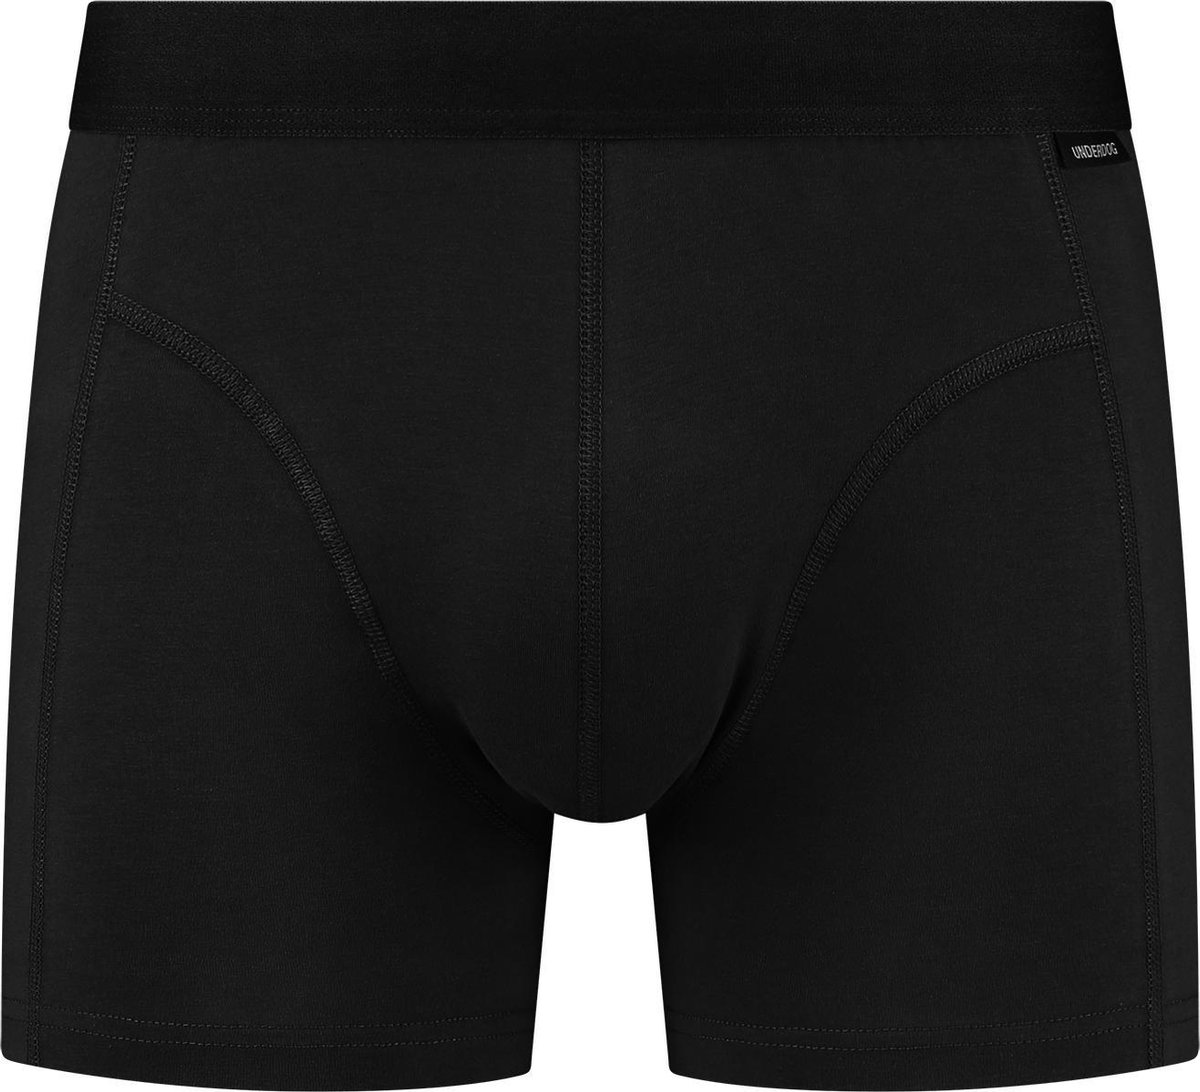 UNDERDOG - Strakke boxershort - Zwart - L - Premium Kwaliteit